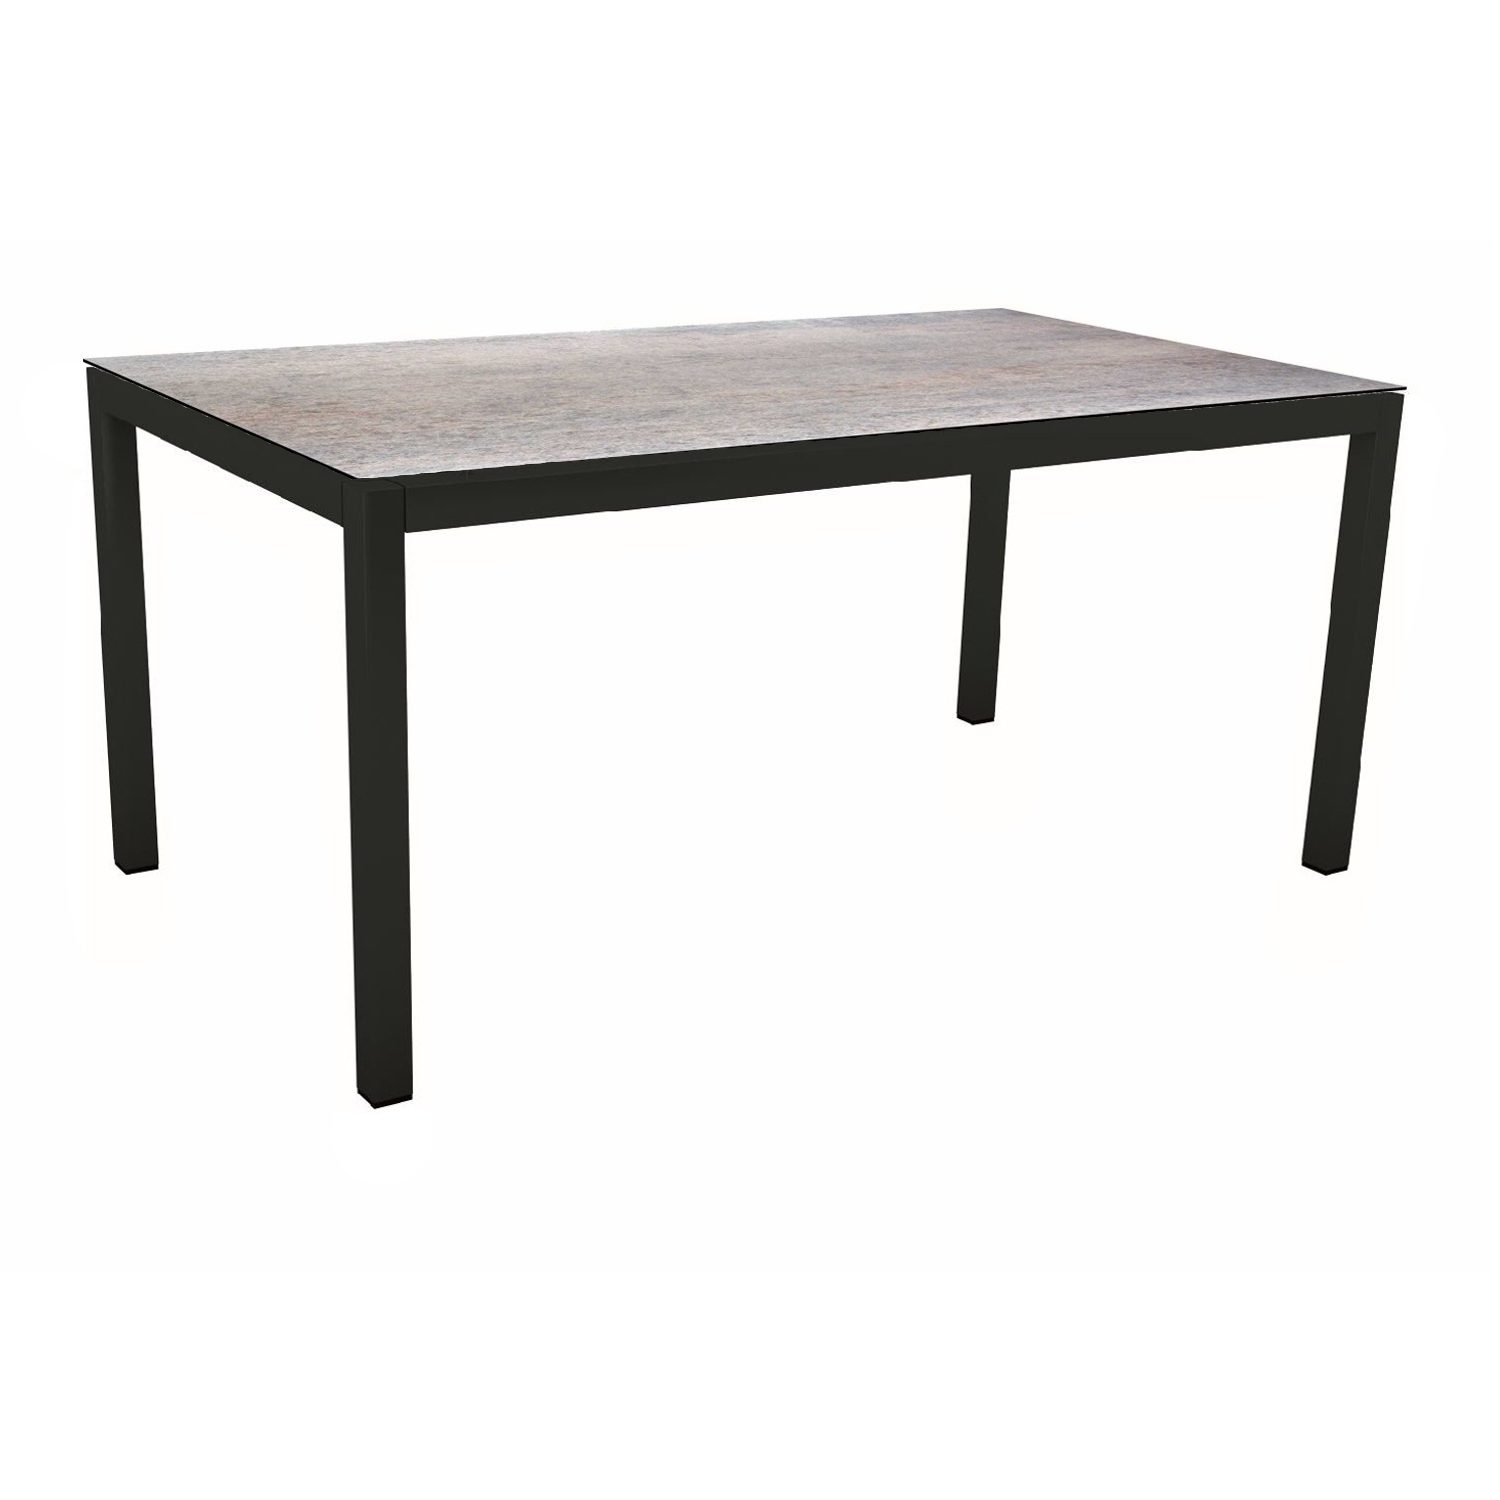 Stern Gartentisch, Gestell Aluminium schwarz matt, Tischplatte HPL Smoky, 130x80 cm